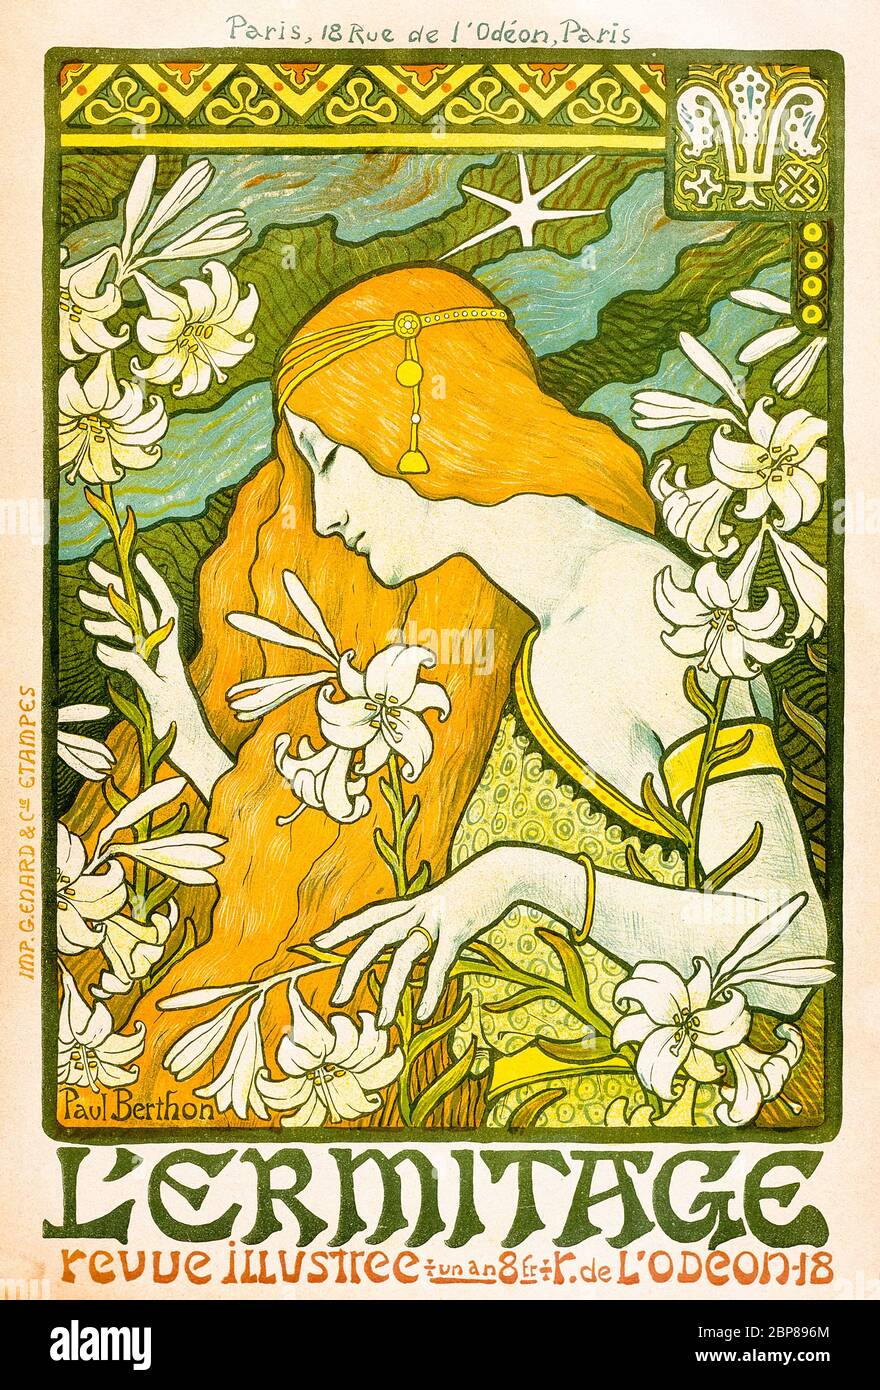 Paul Berthon, L'Ermitage, Art Nouveau, poster, 1897 Stock Photo